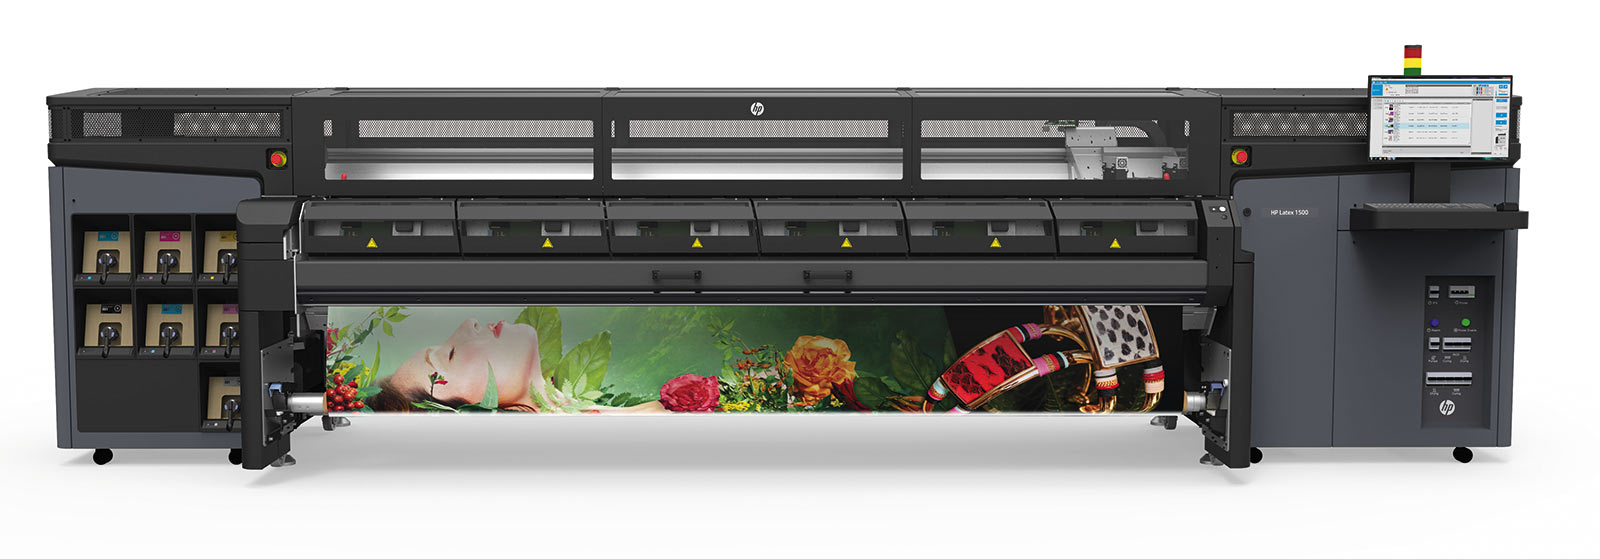 Модель HP Latex 1500 позволяет печатать на рулонах шириной до 3,2 м